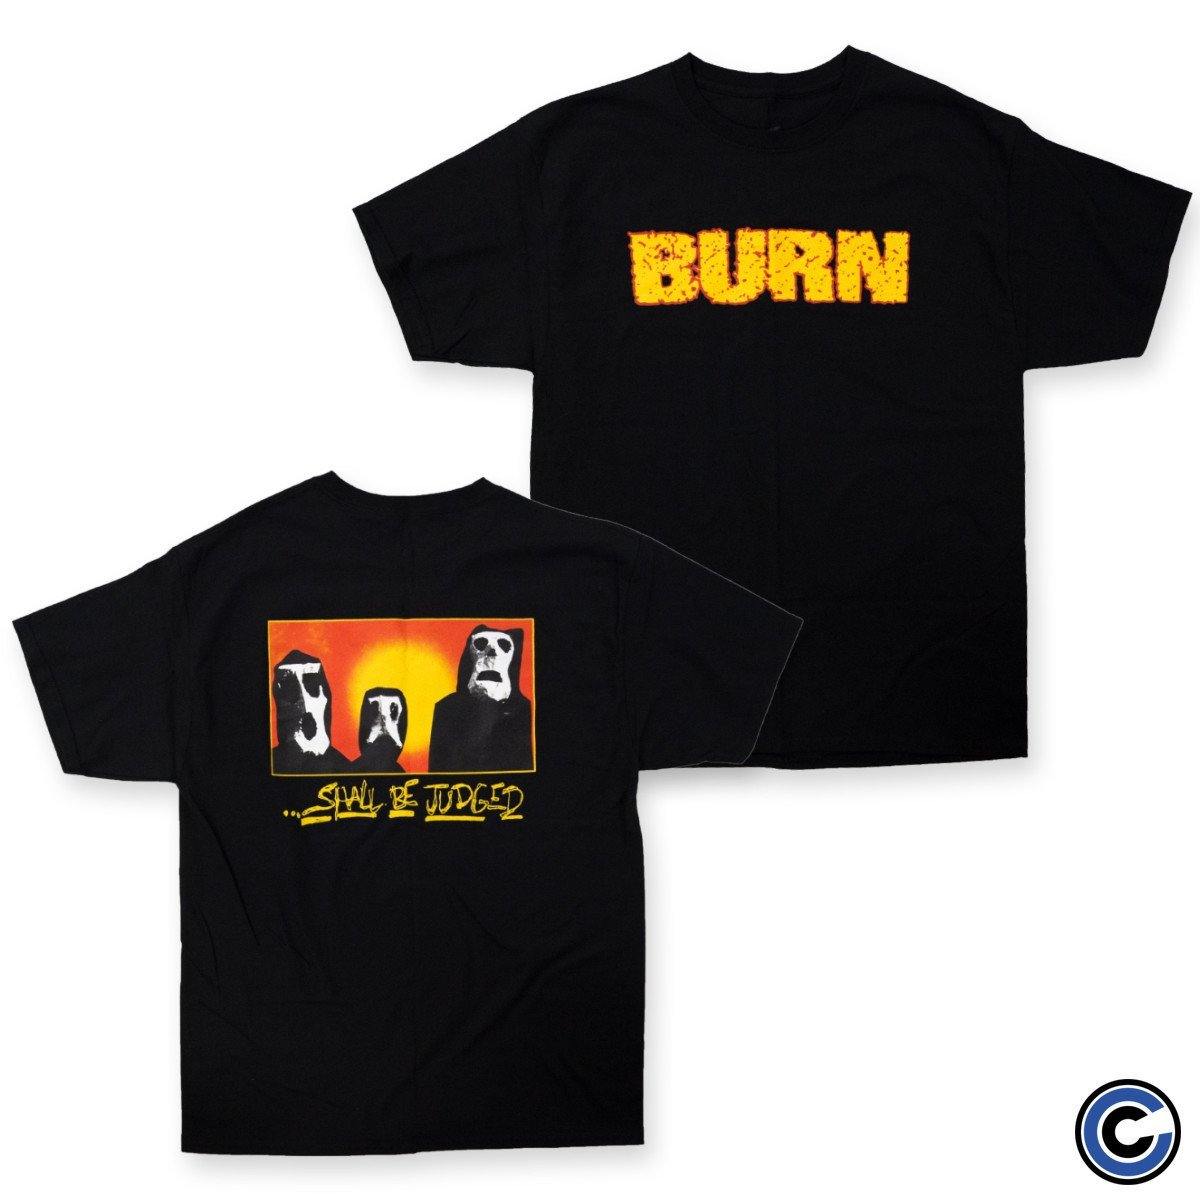 Buy – Burn "Shall Be Judged" Shirt – Band & Music Merch – Cold Cuts Merch